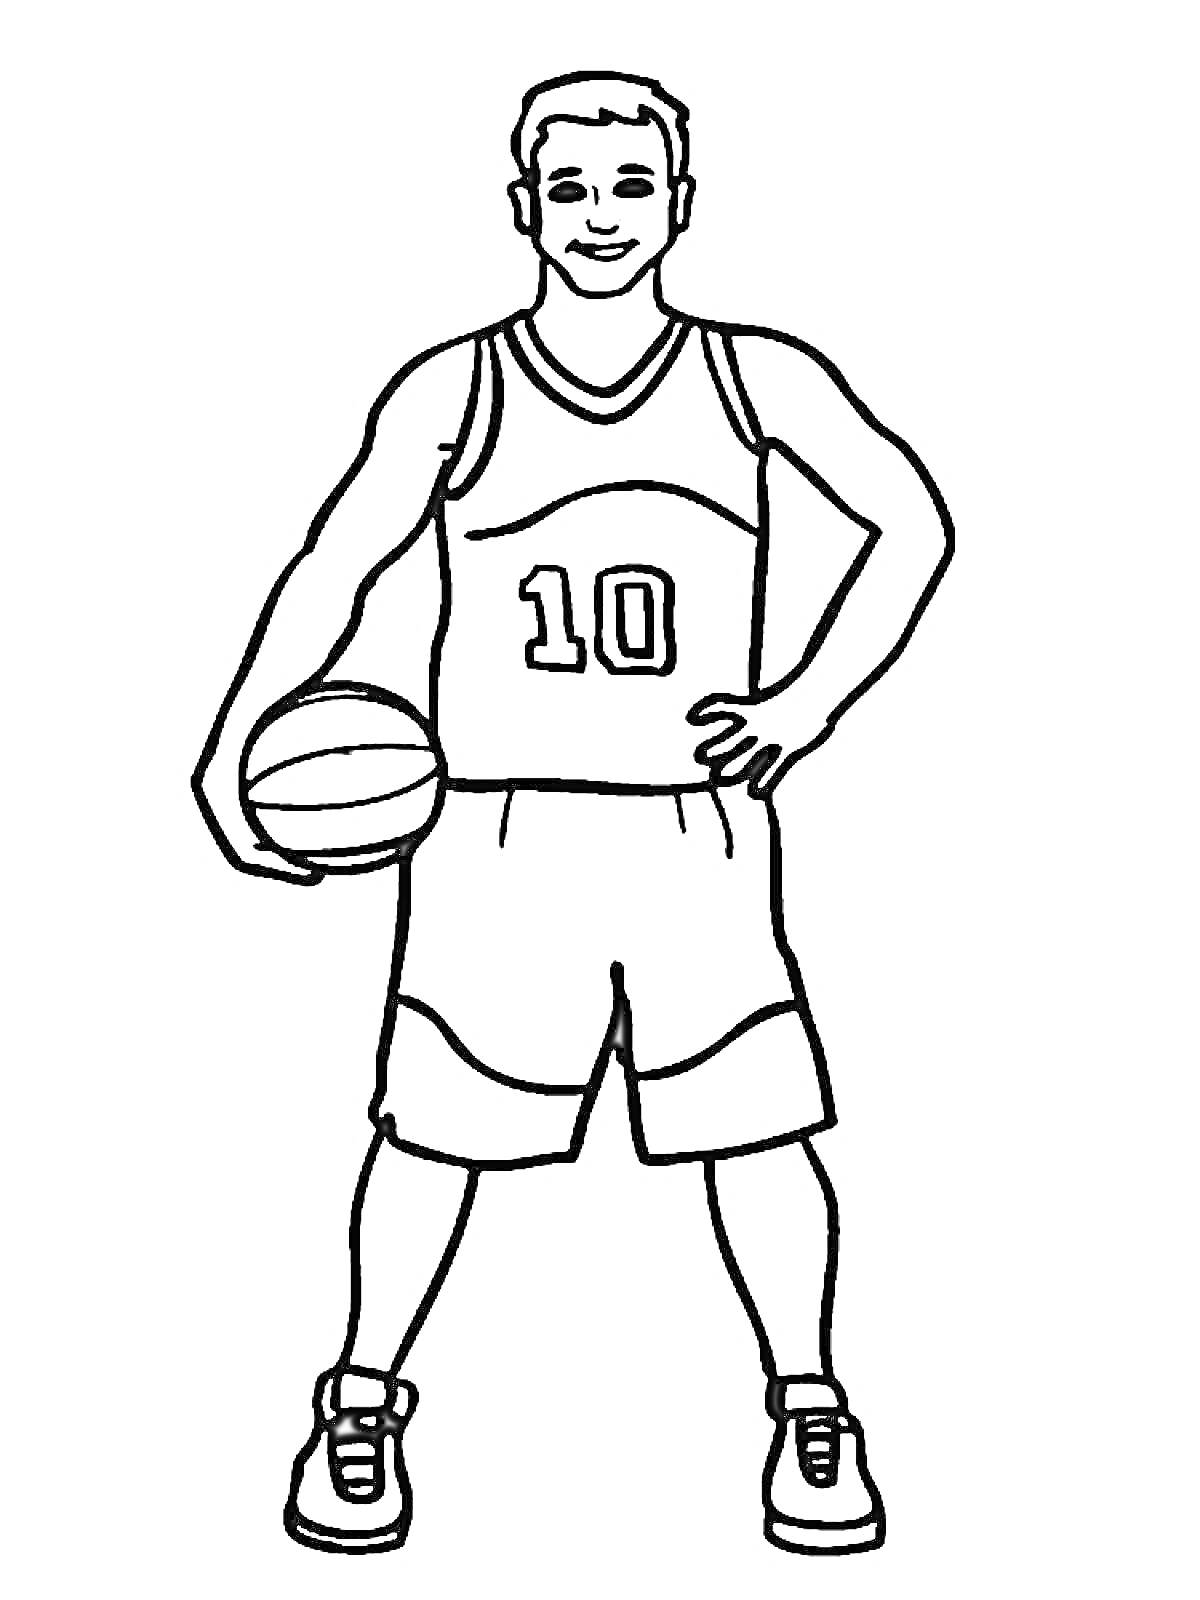 Раскраска Баскетболист с баскетбольным мячом, в майке с номером 10, в шортах и кроссовках